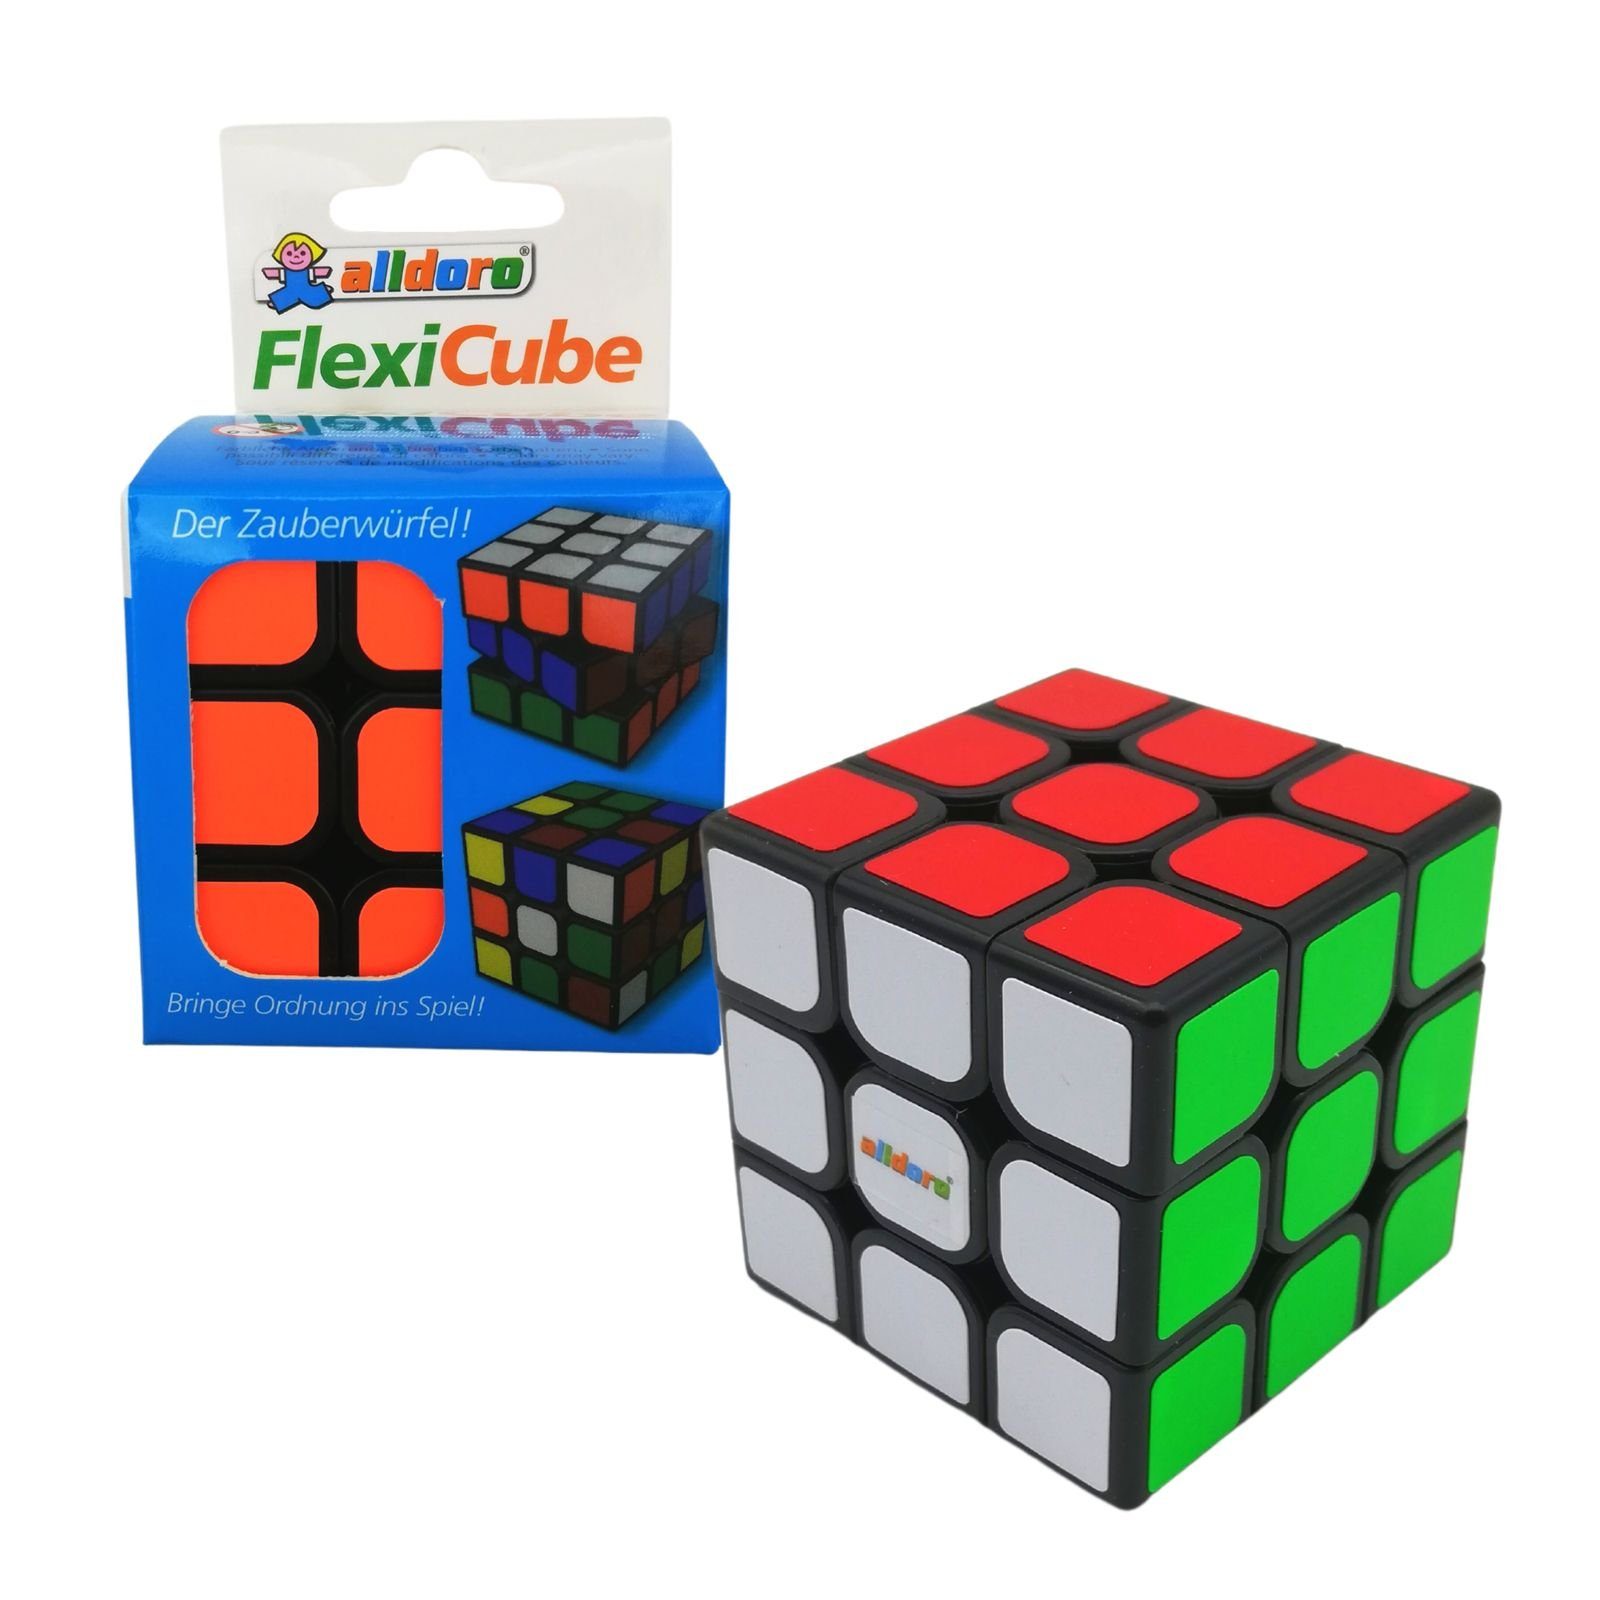 alldoro Spiel, 60338, Flexi Cube, bunter Zauberwürfel für Kinder und Erwachsene